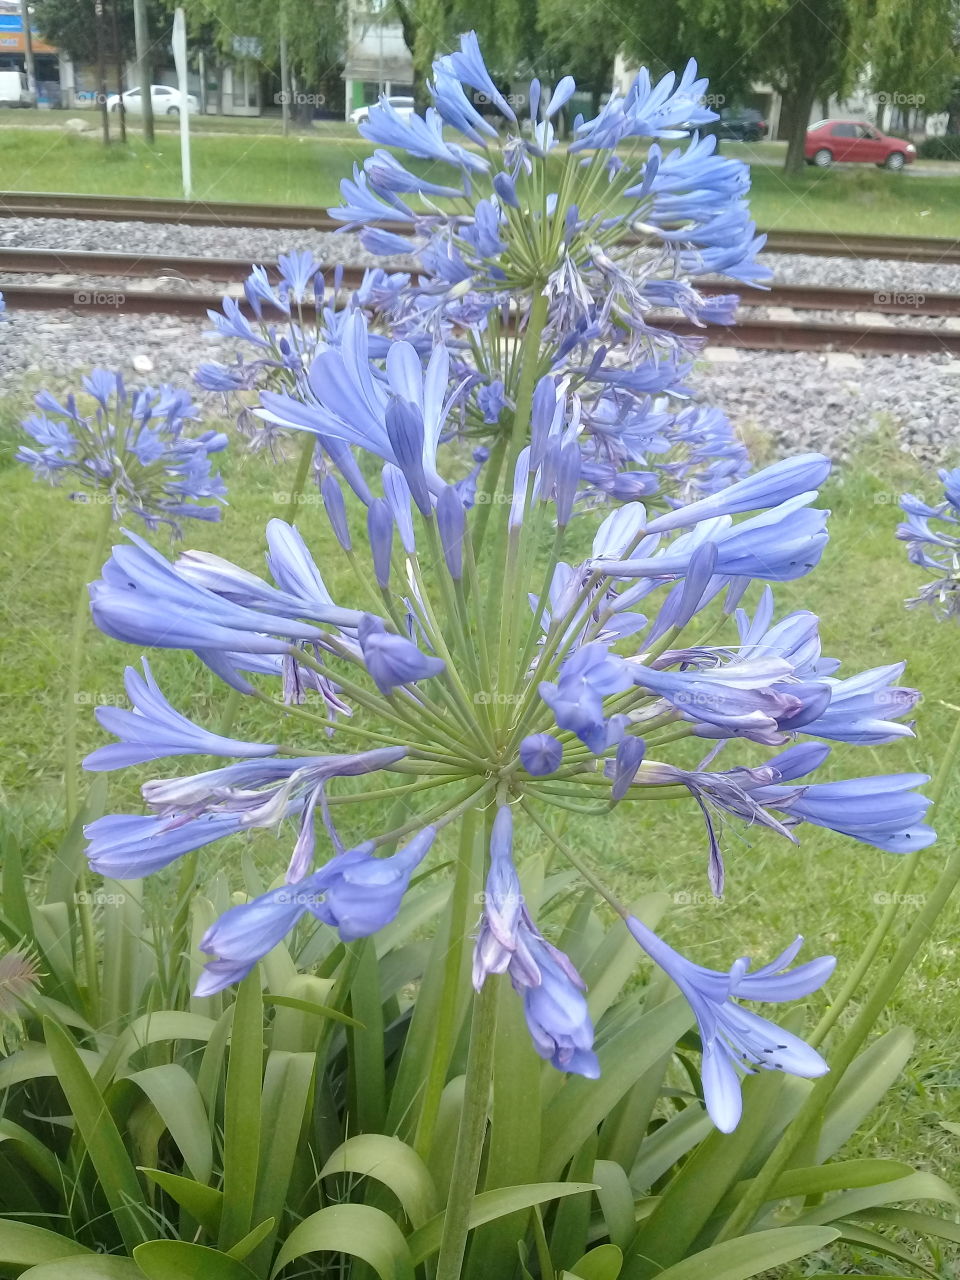 arbusto de jardín de nombre desconocido en plena floración plantado junto a las vías del ferrocarril.